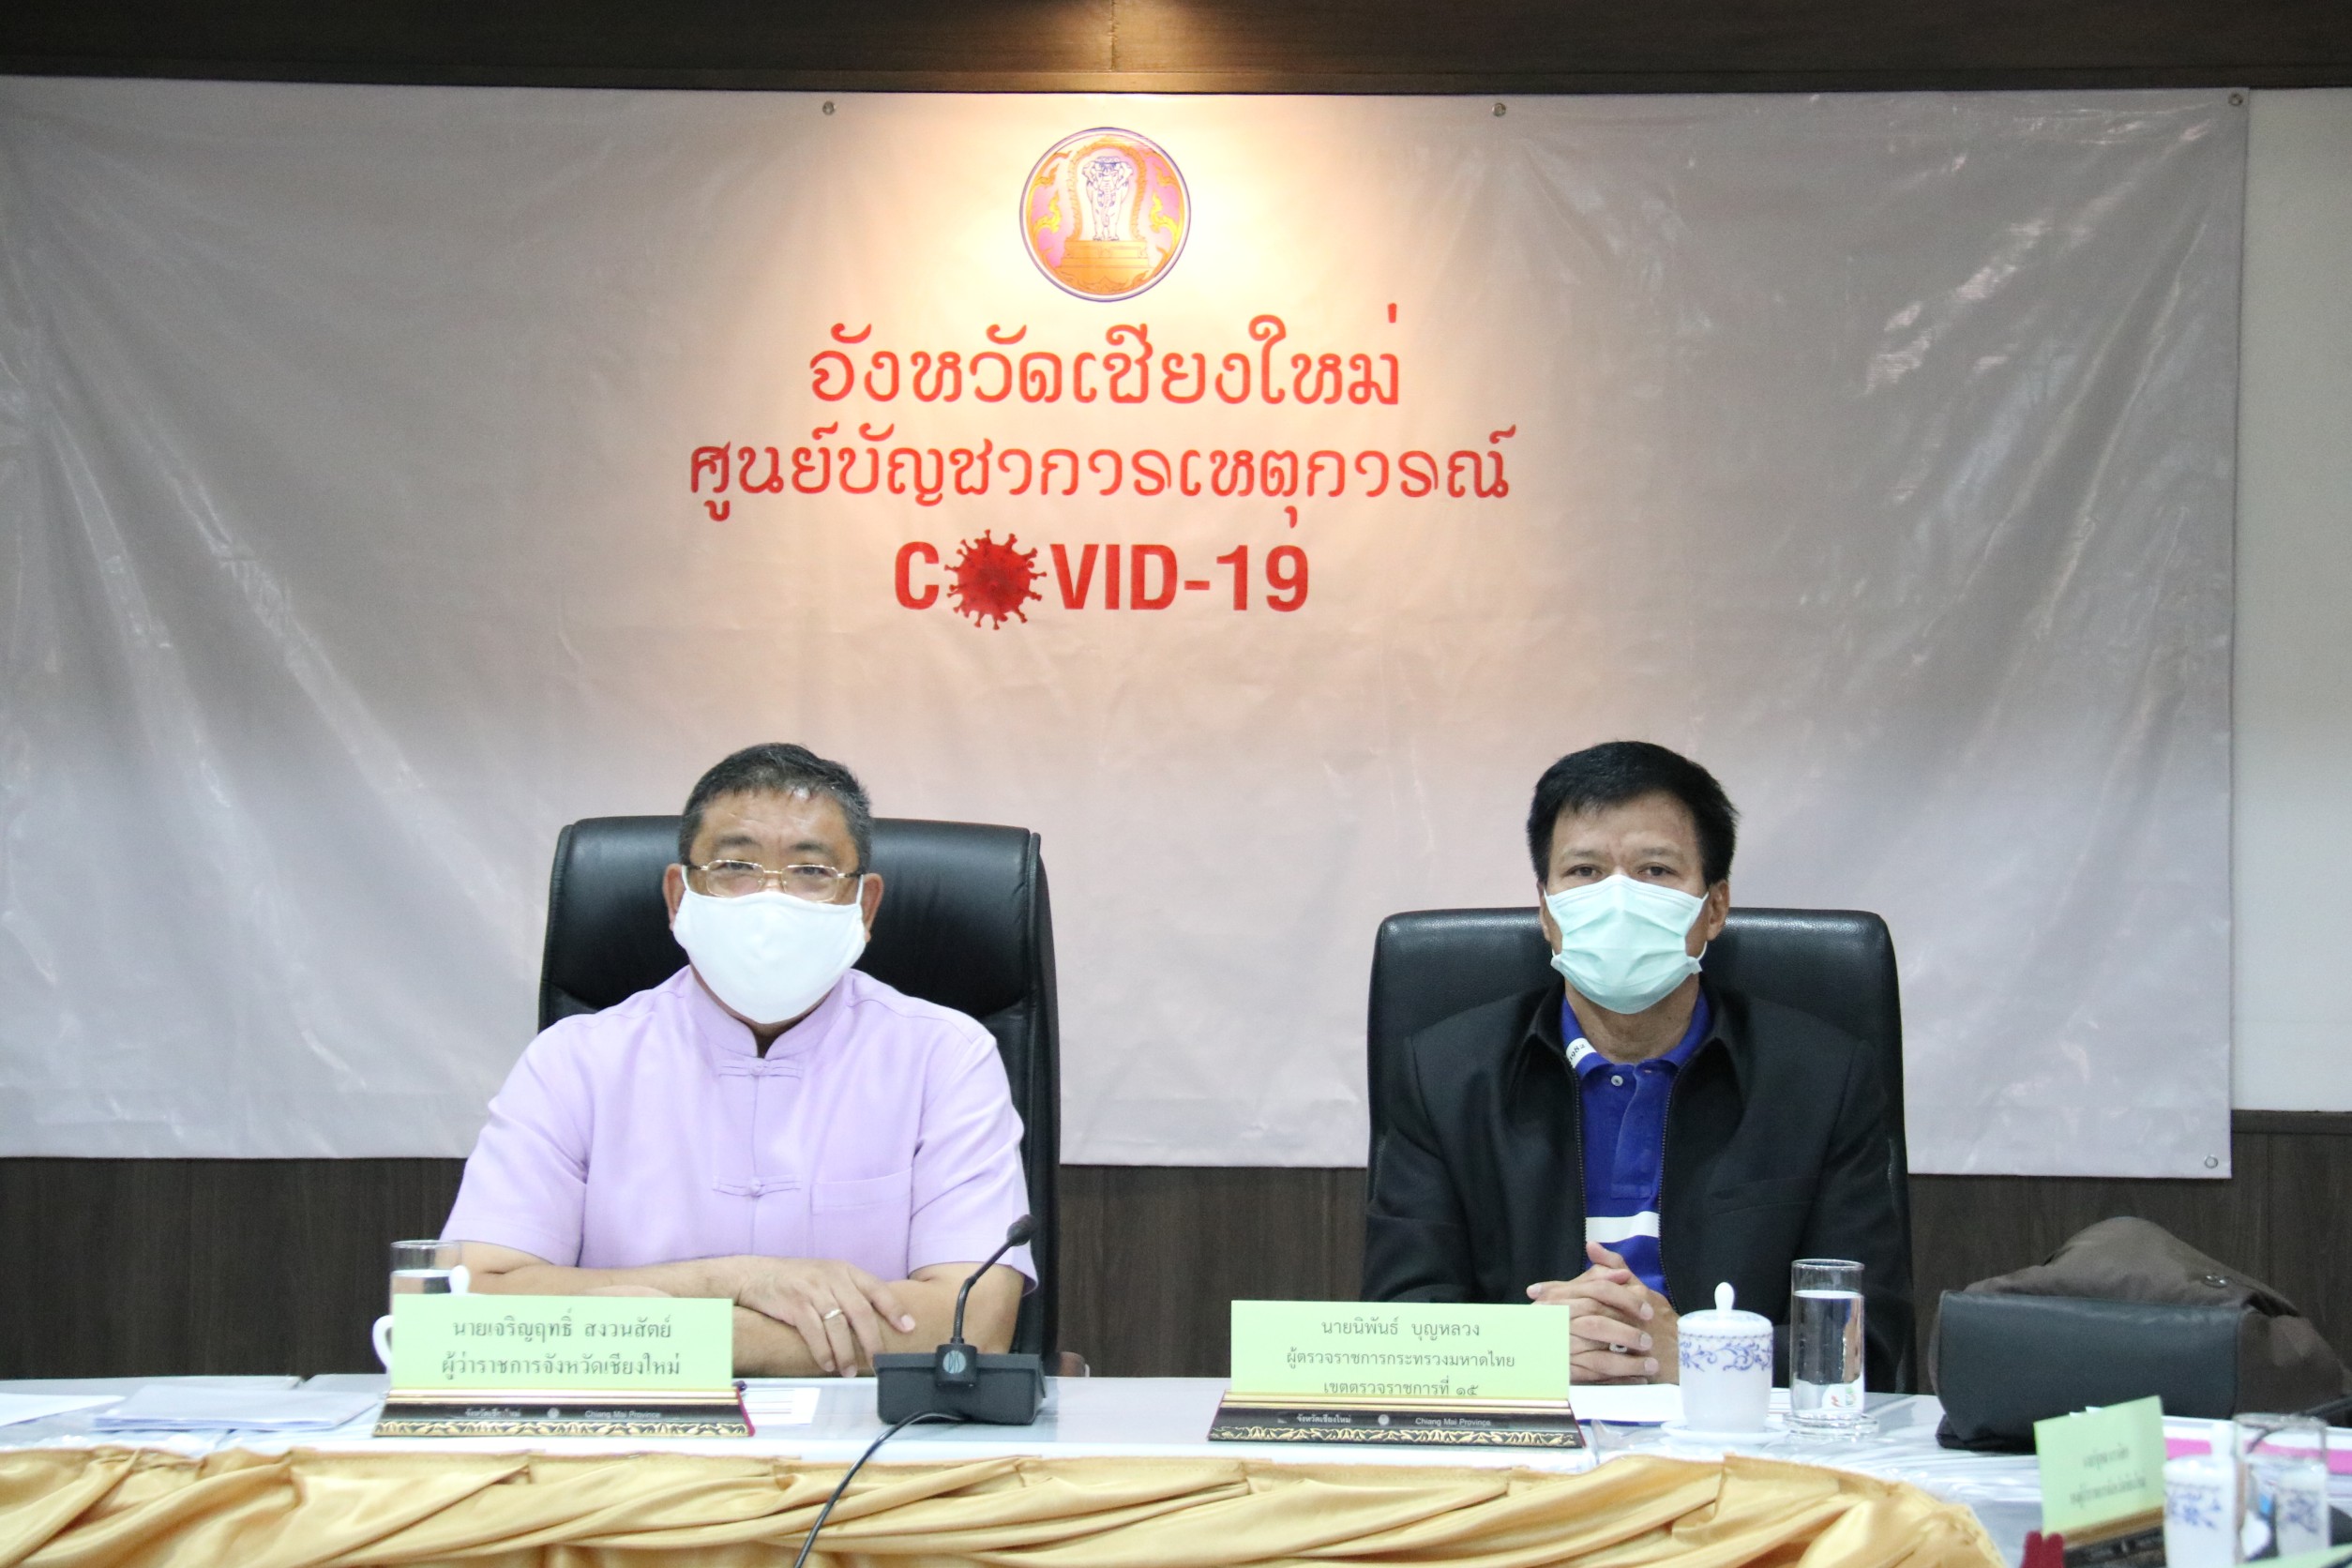 กระทรวงมหาดไทย ประชุมผ่านระบบ วีดีทัศน์ทางไกล (VCS) เพื่อซักซ้อมแนวทางปฏิบัติตามมาตรการป้องกันและแพร่ระบาดของ โควิด -19  พร้อมกับทุกจังหวัดทั่วประเทศ เน้นย้ำทุกจังหวัดศึกษาข้อปฏิบัติตามกฎหมาย เป็นหนึ่งเดียวเหมือนกัน